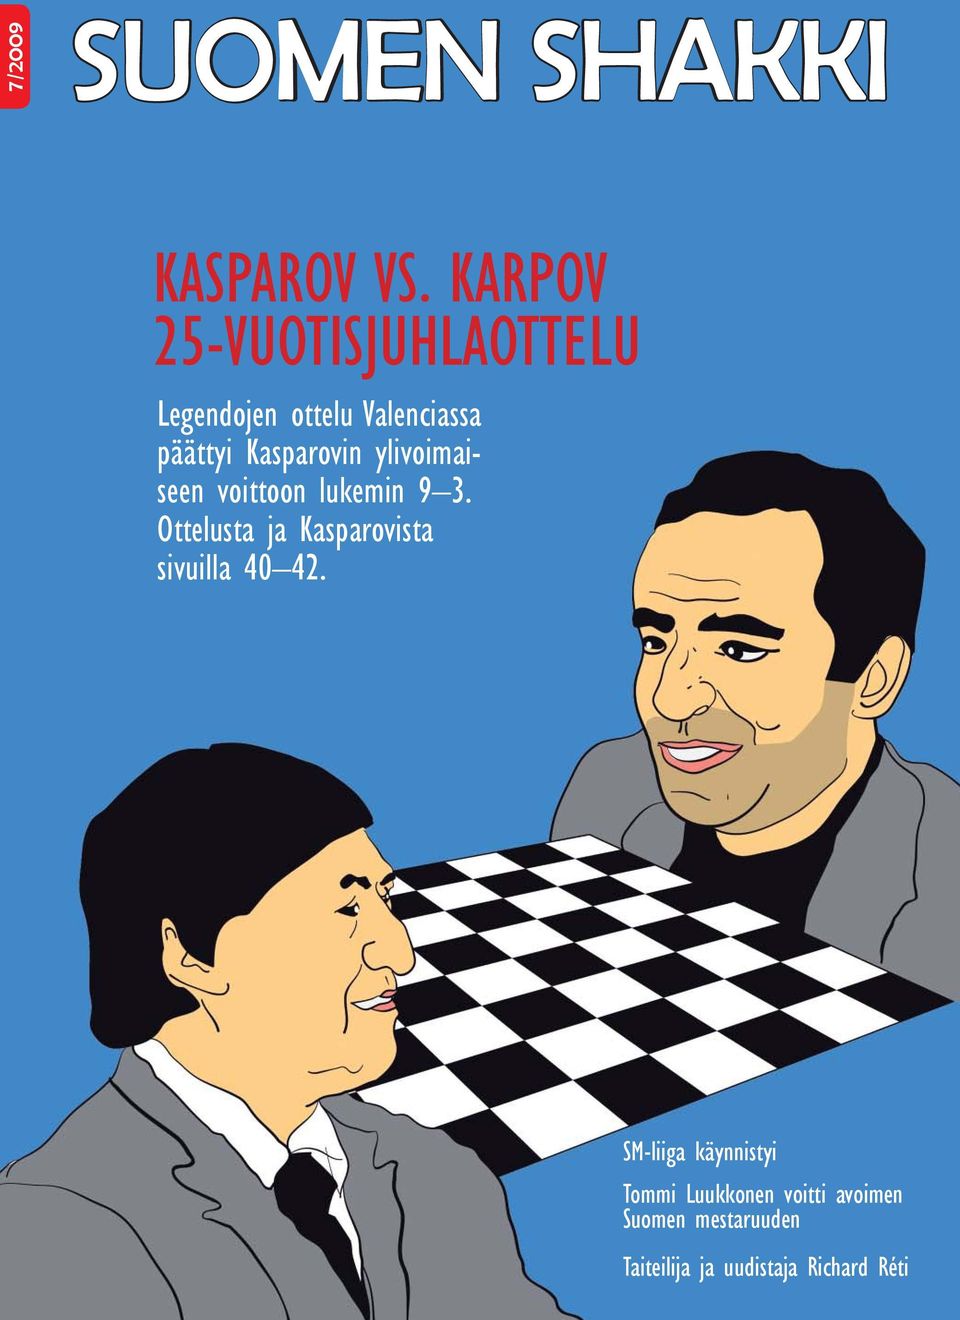 ylivoimaiseen voittoon lukemin 9 3. Ottelusta ja Kasparovista sivuilla 40 42.